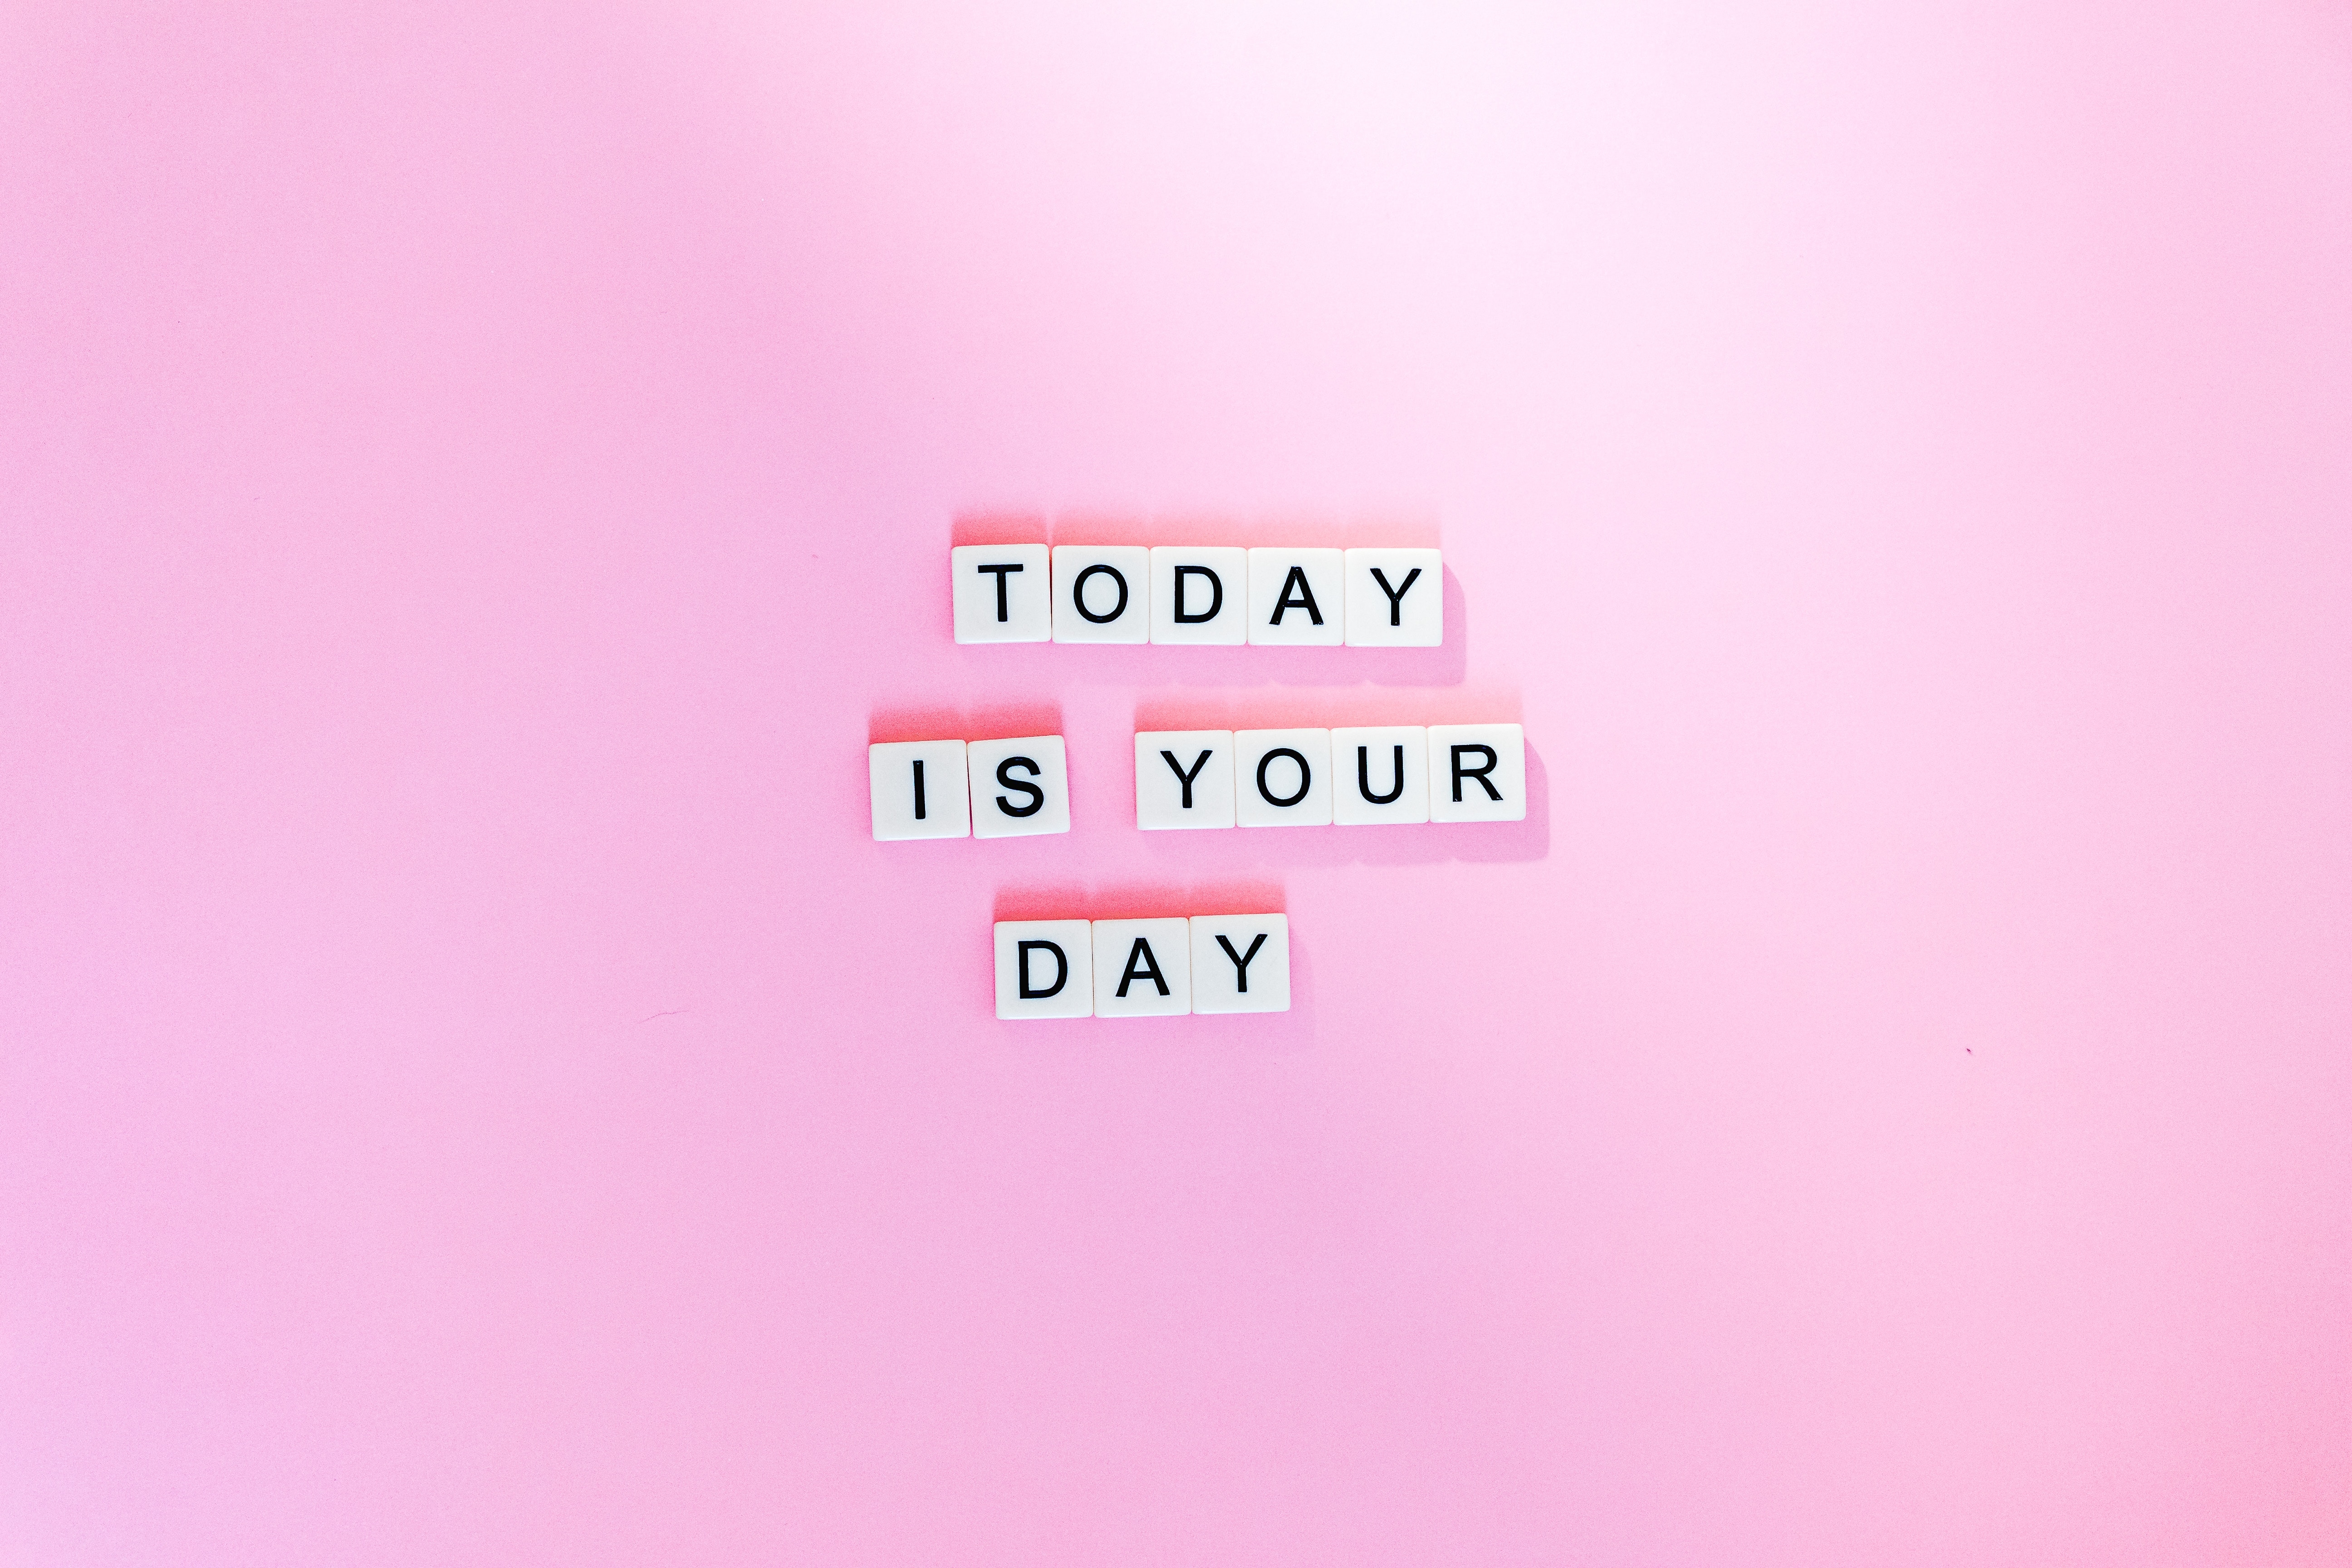 桌面上的壁纸今天是你的日子 励志名言 粉色背景